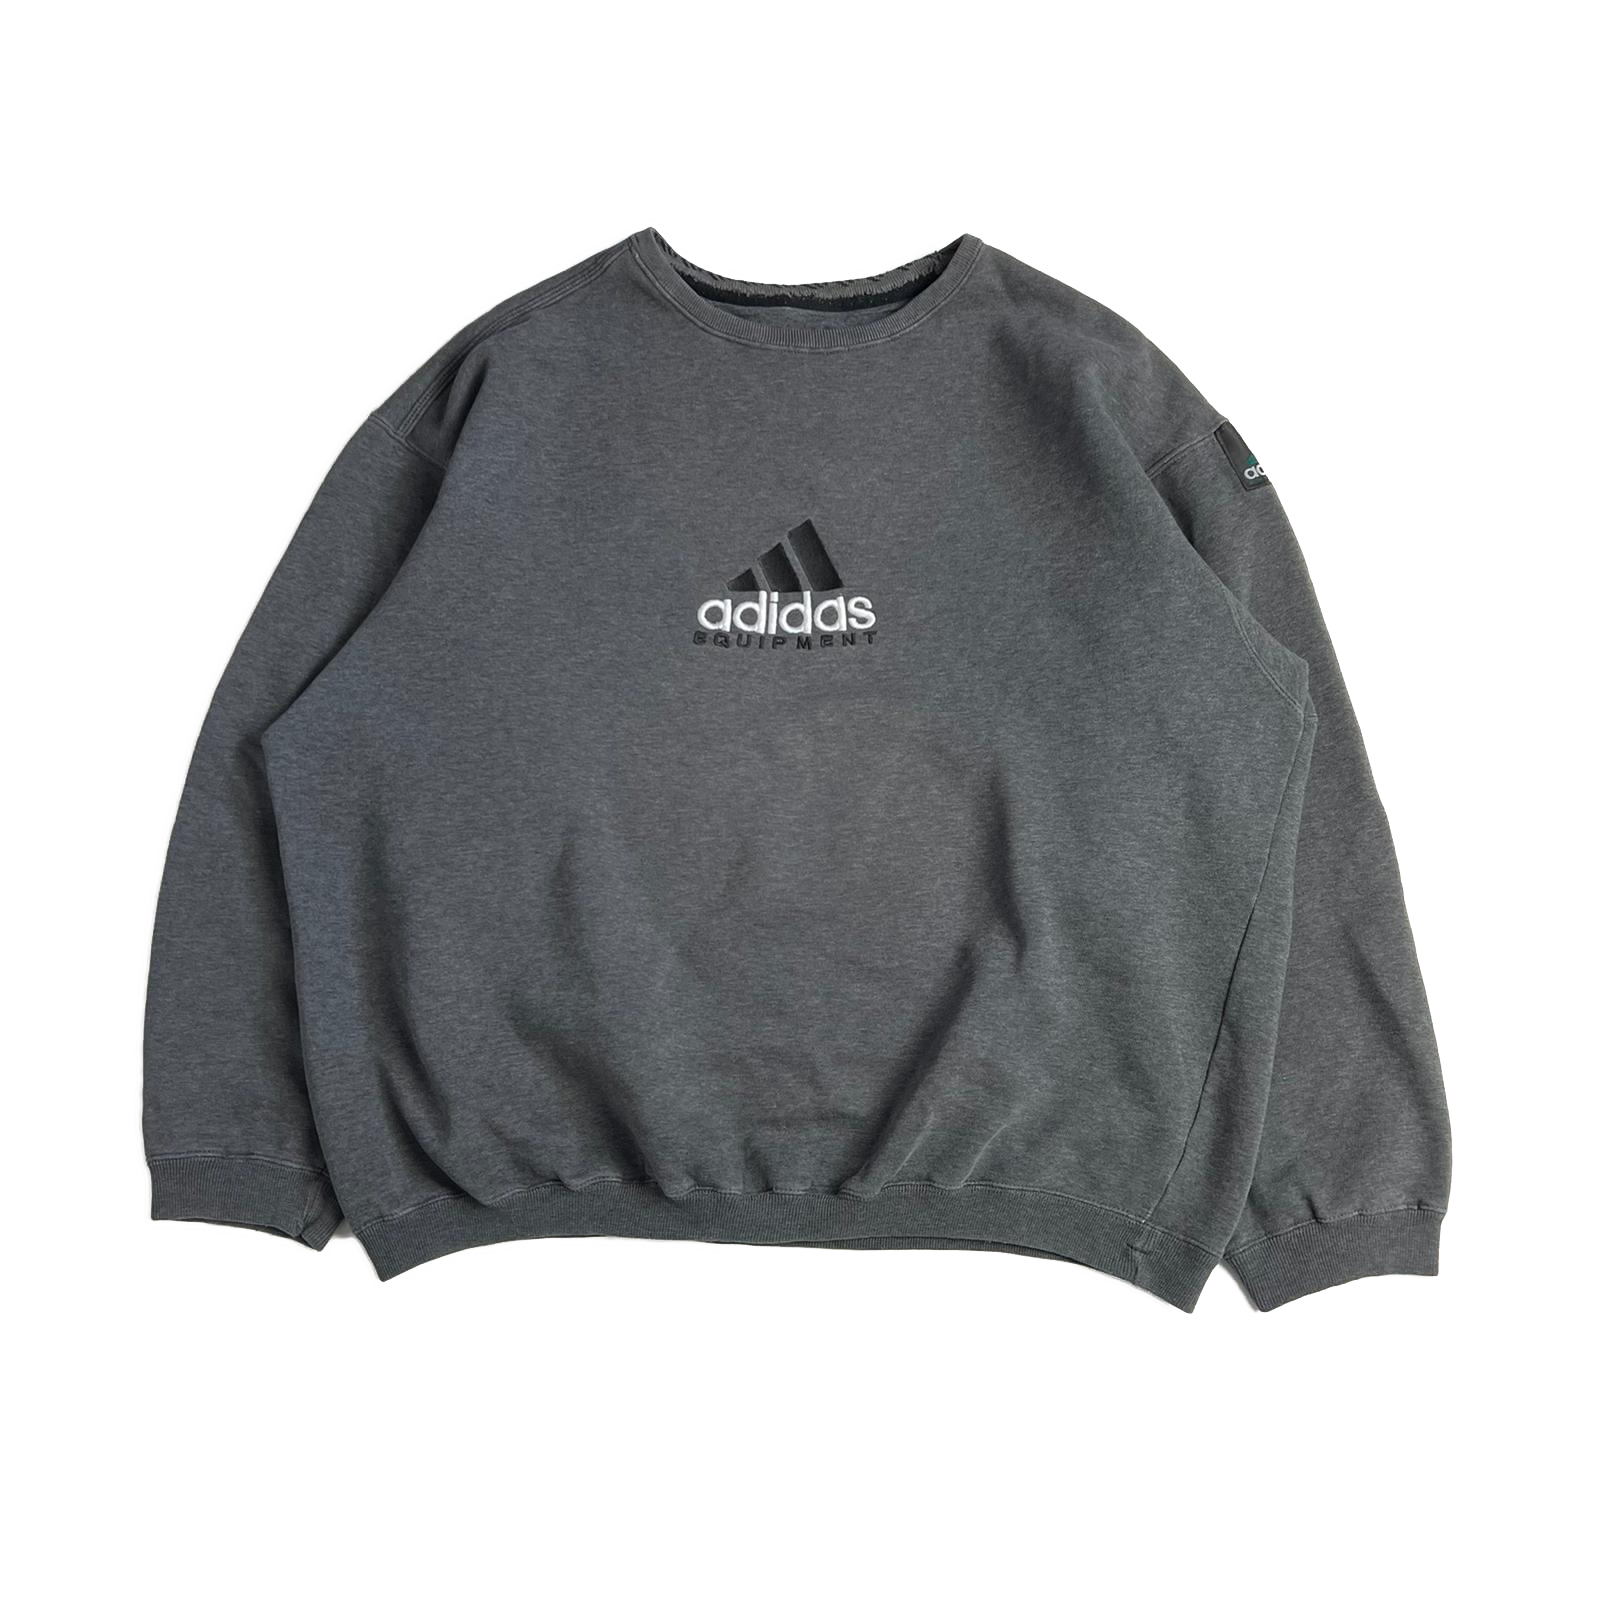 90's Adidas sweatshirt VINTAGE